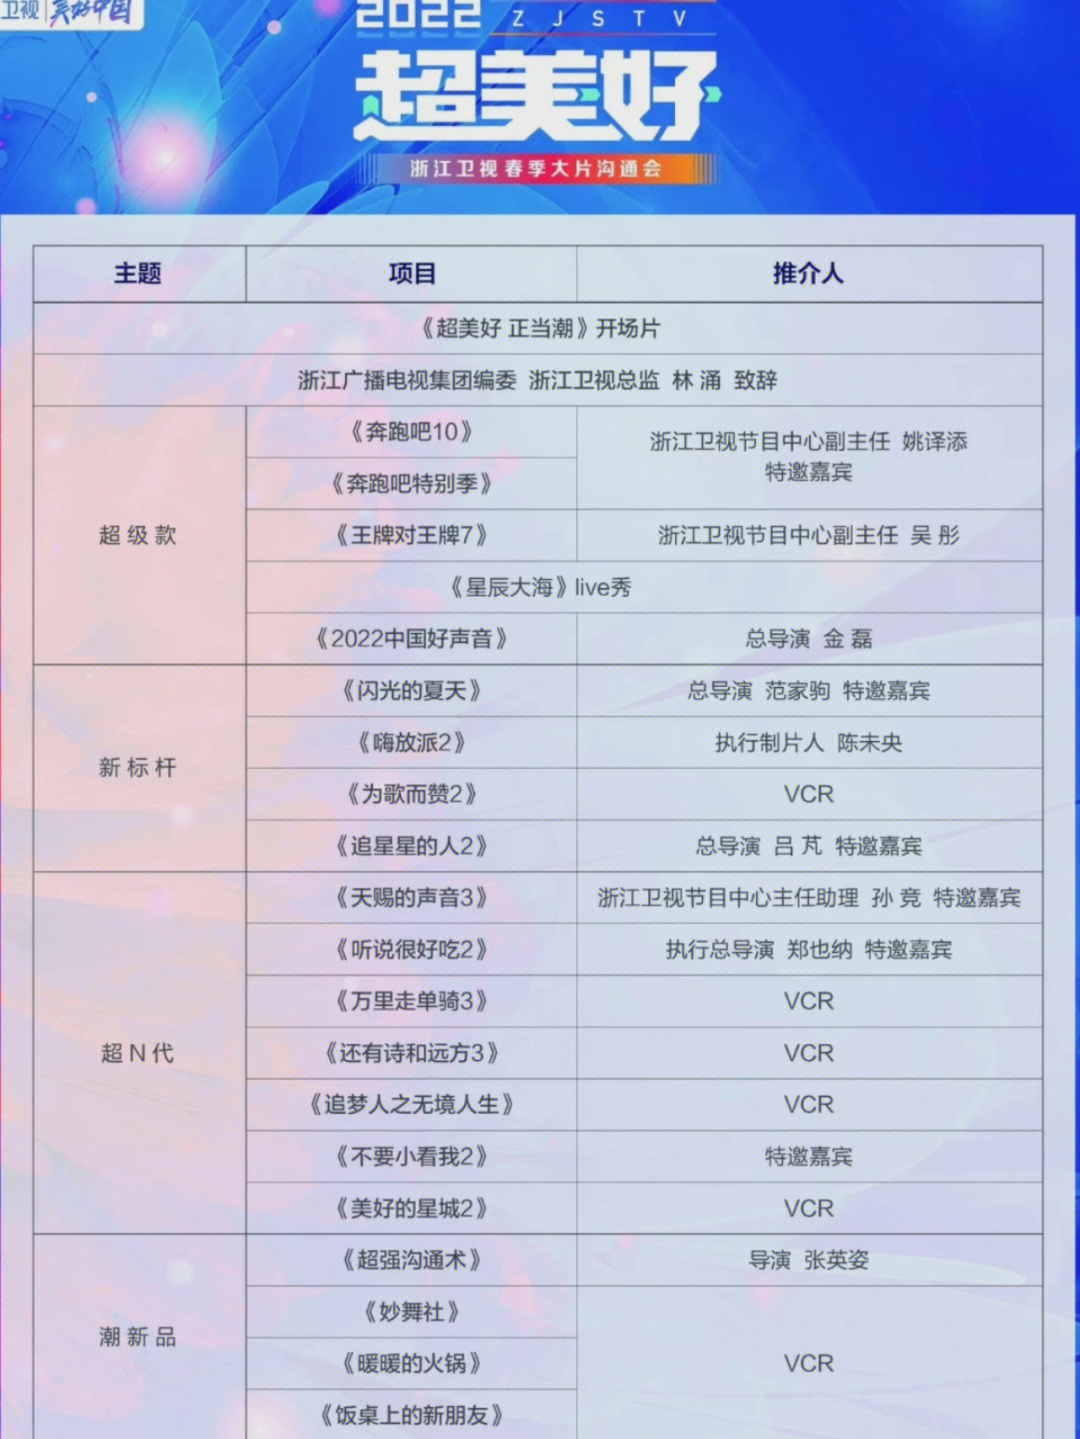 浙江卫视电视剧节目表图片